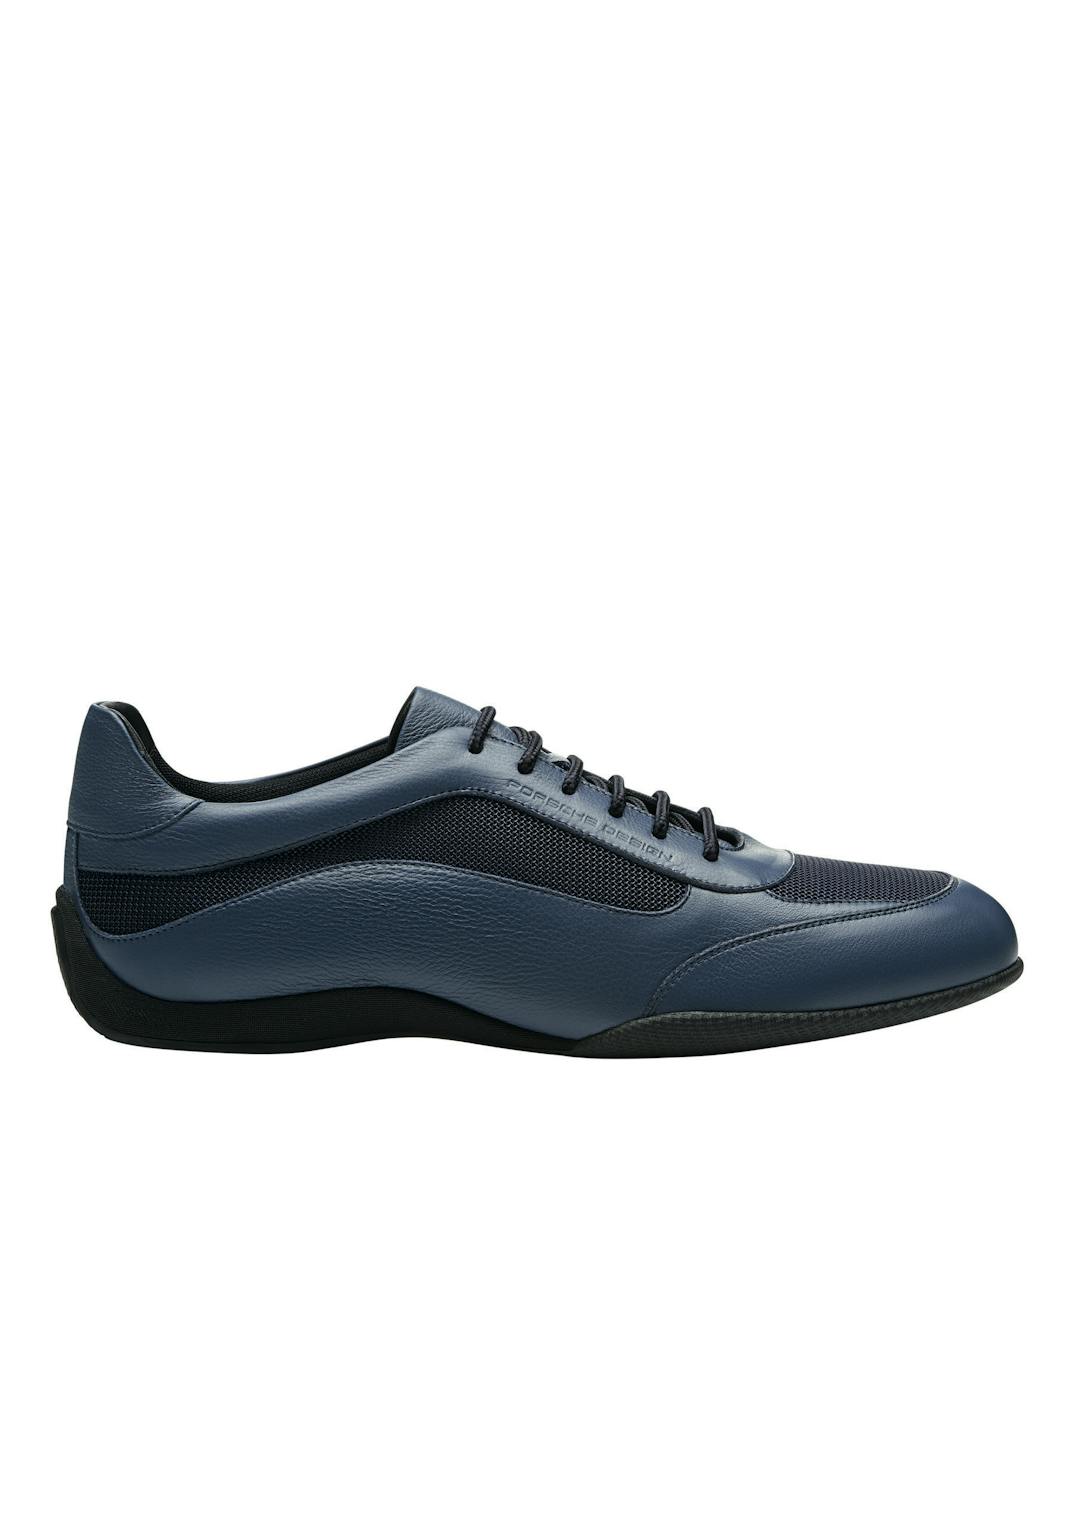 PorscheDesign_Shoes_Racer_Sneaker_NavyBlazer